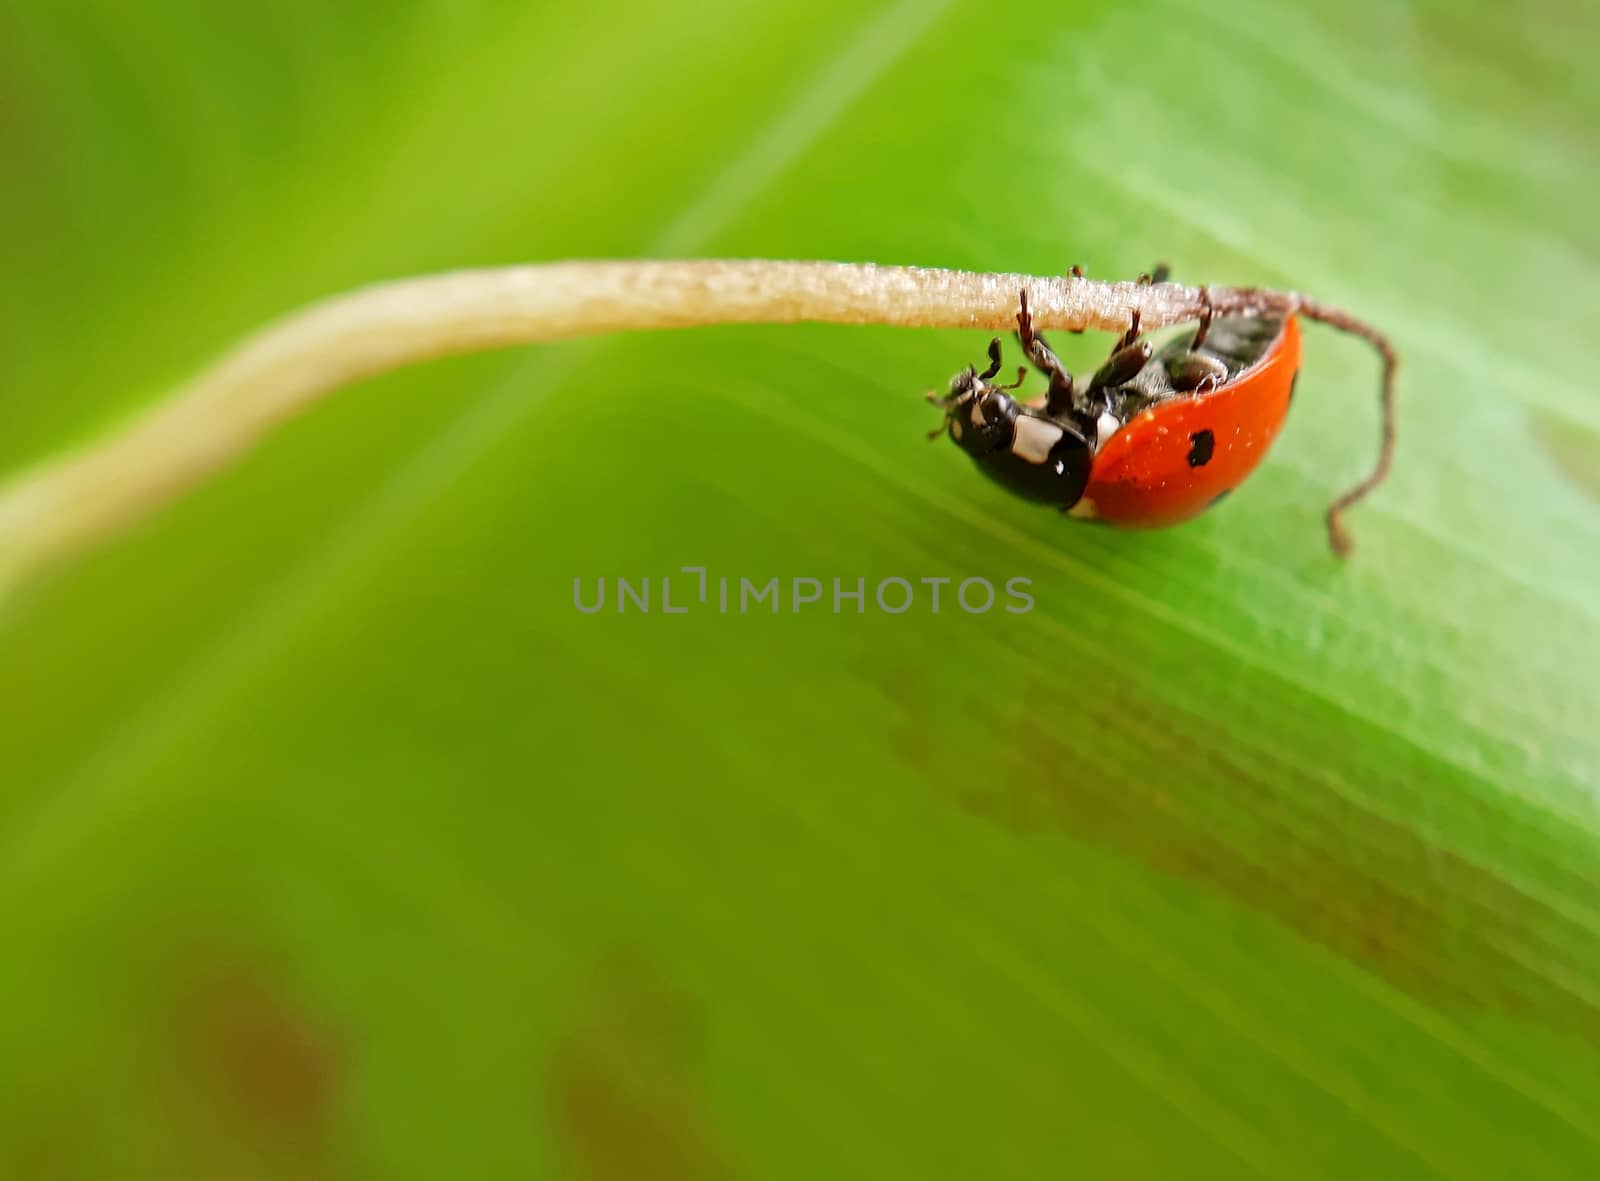 A ladybug on a banana leaf macro by Mindru